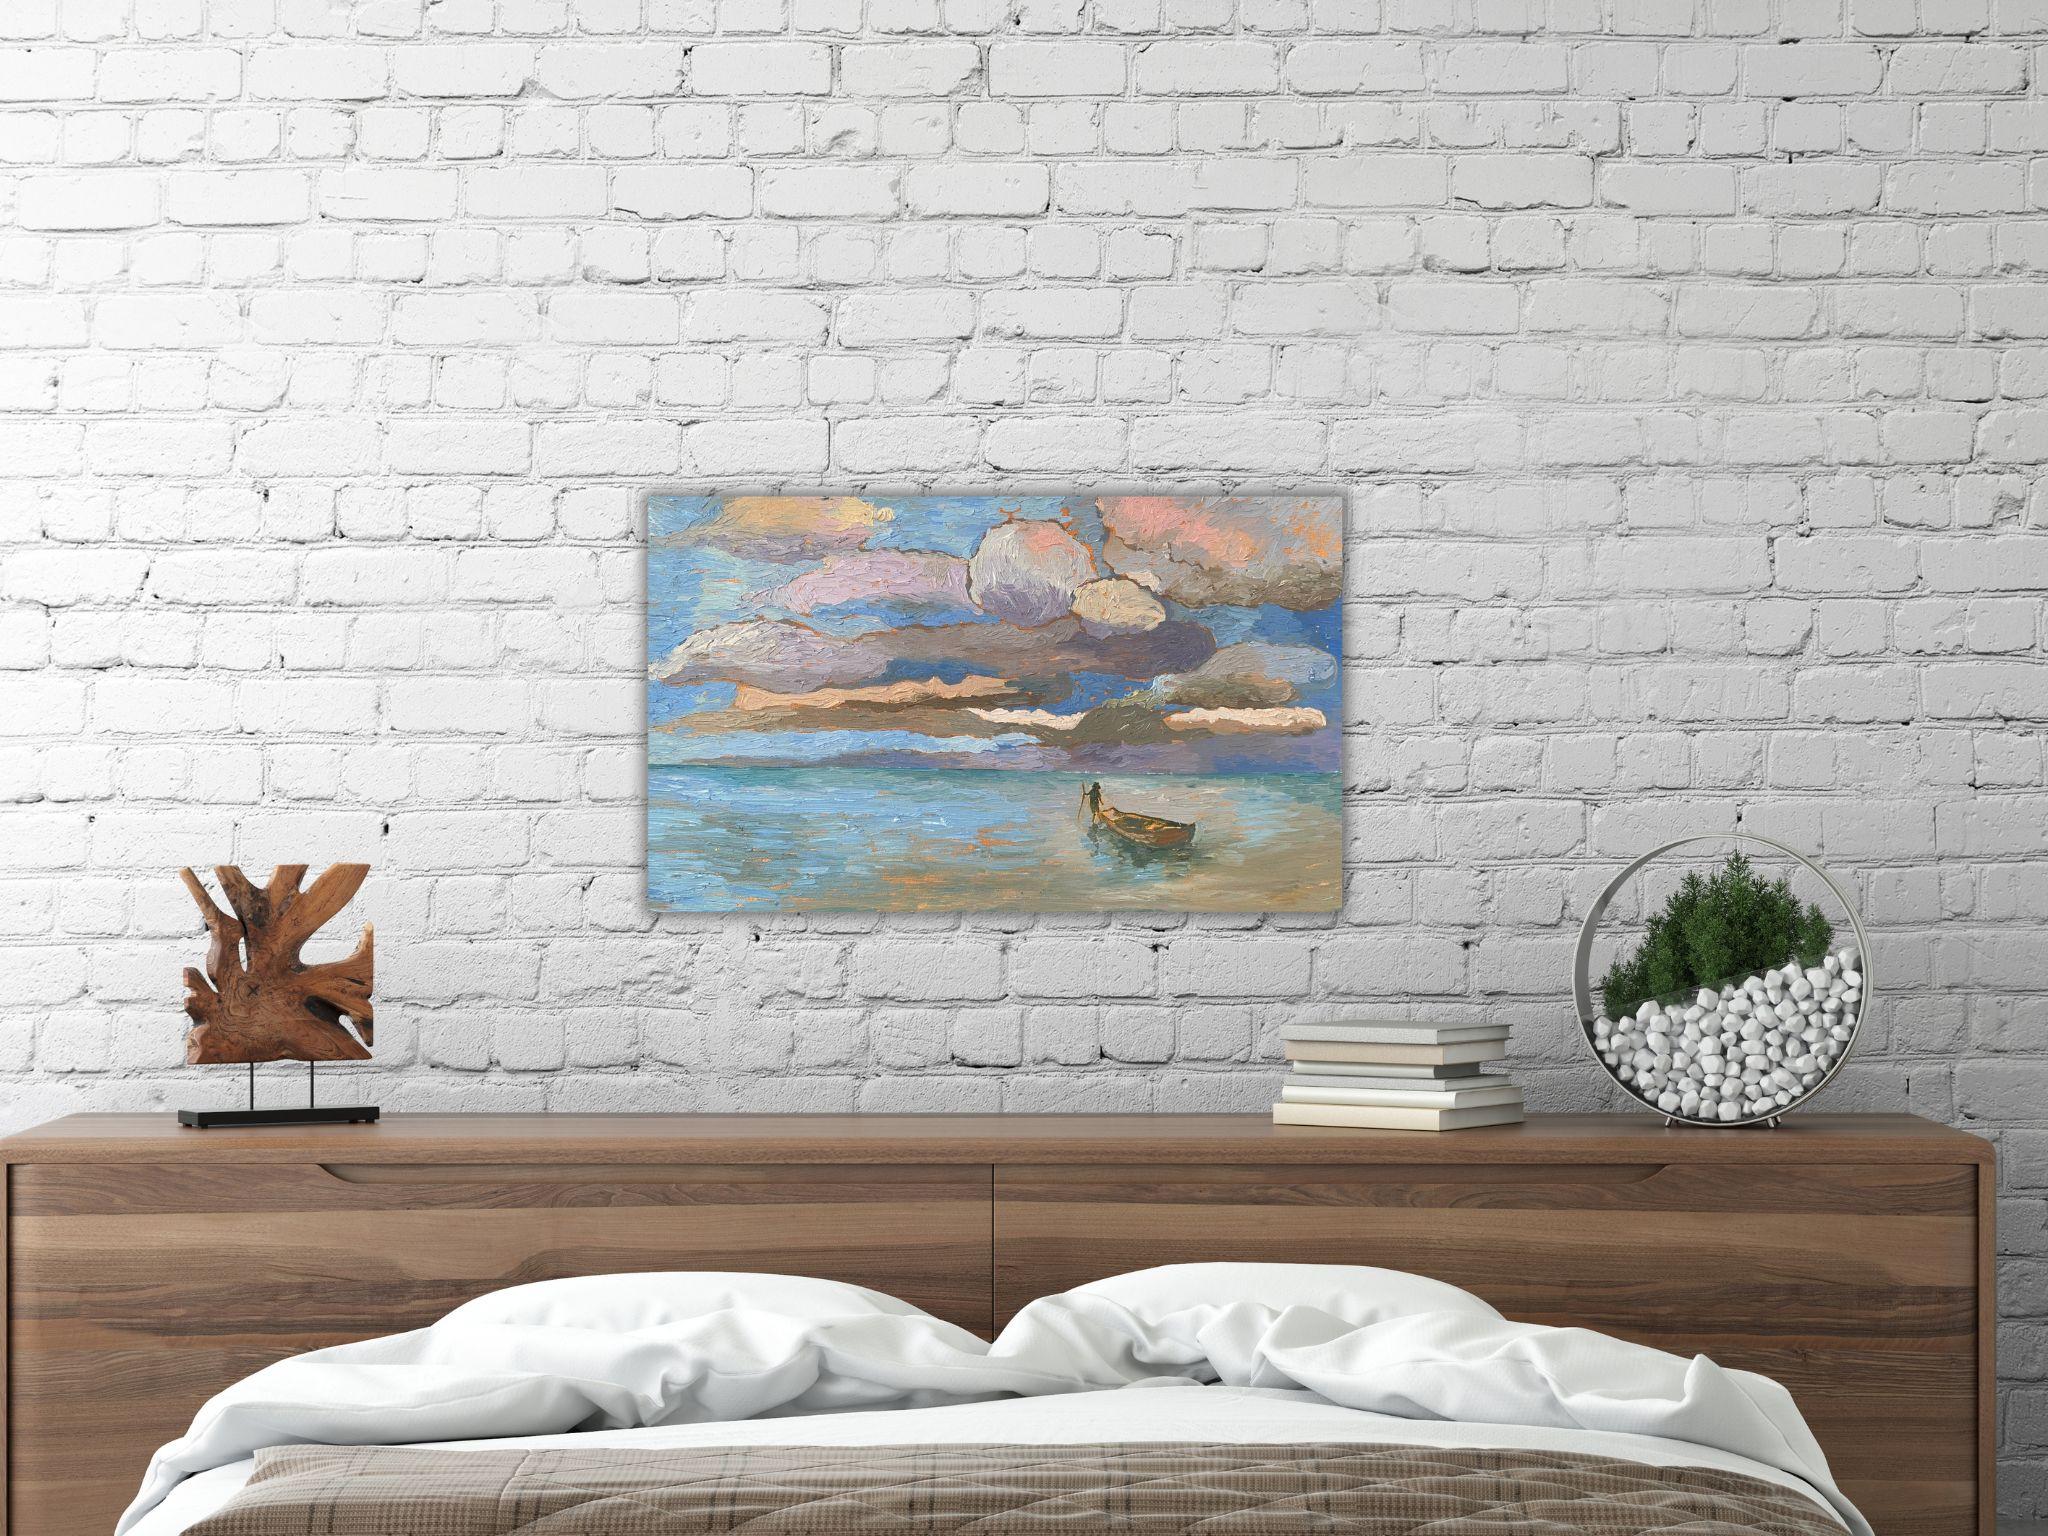 Der Himmel in mir (Impressionismus), Painting, von Dasha Pogodina